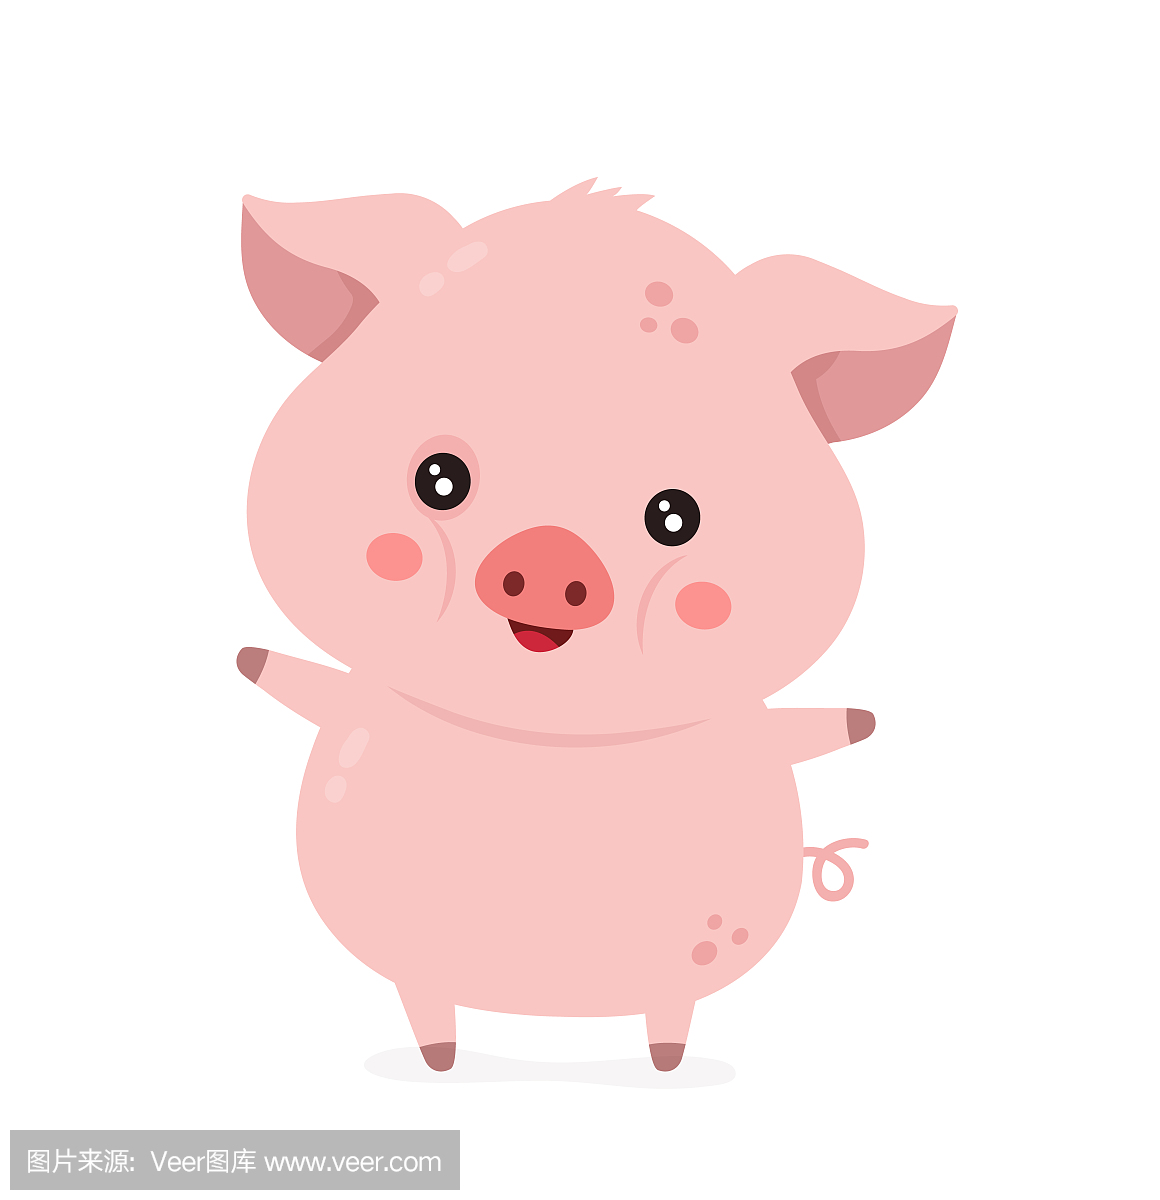 可爱的微笑快乐有趣的小猪